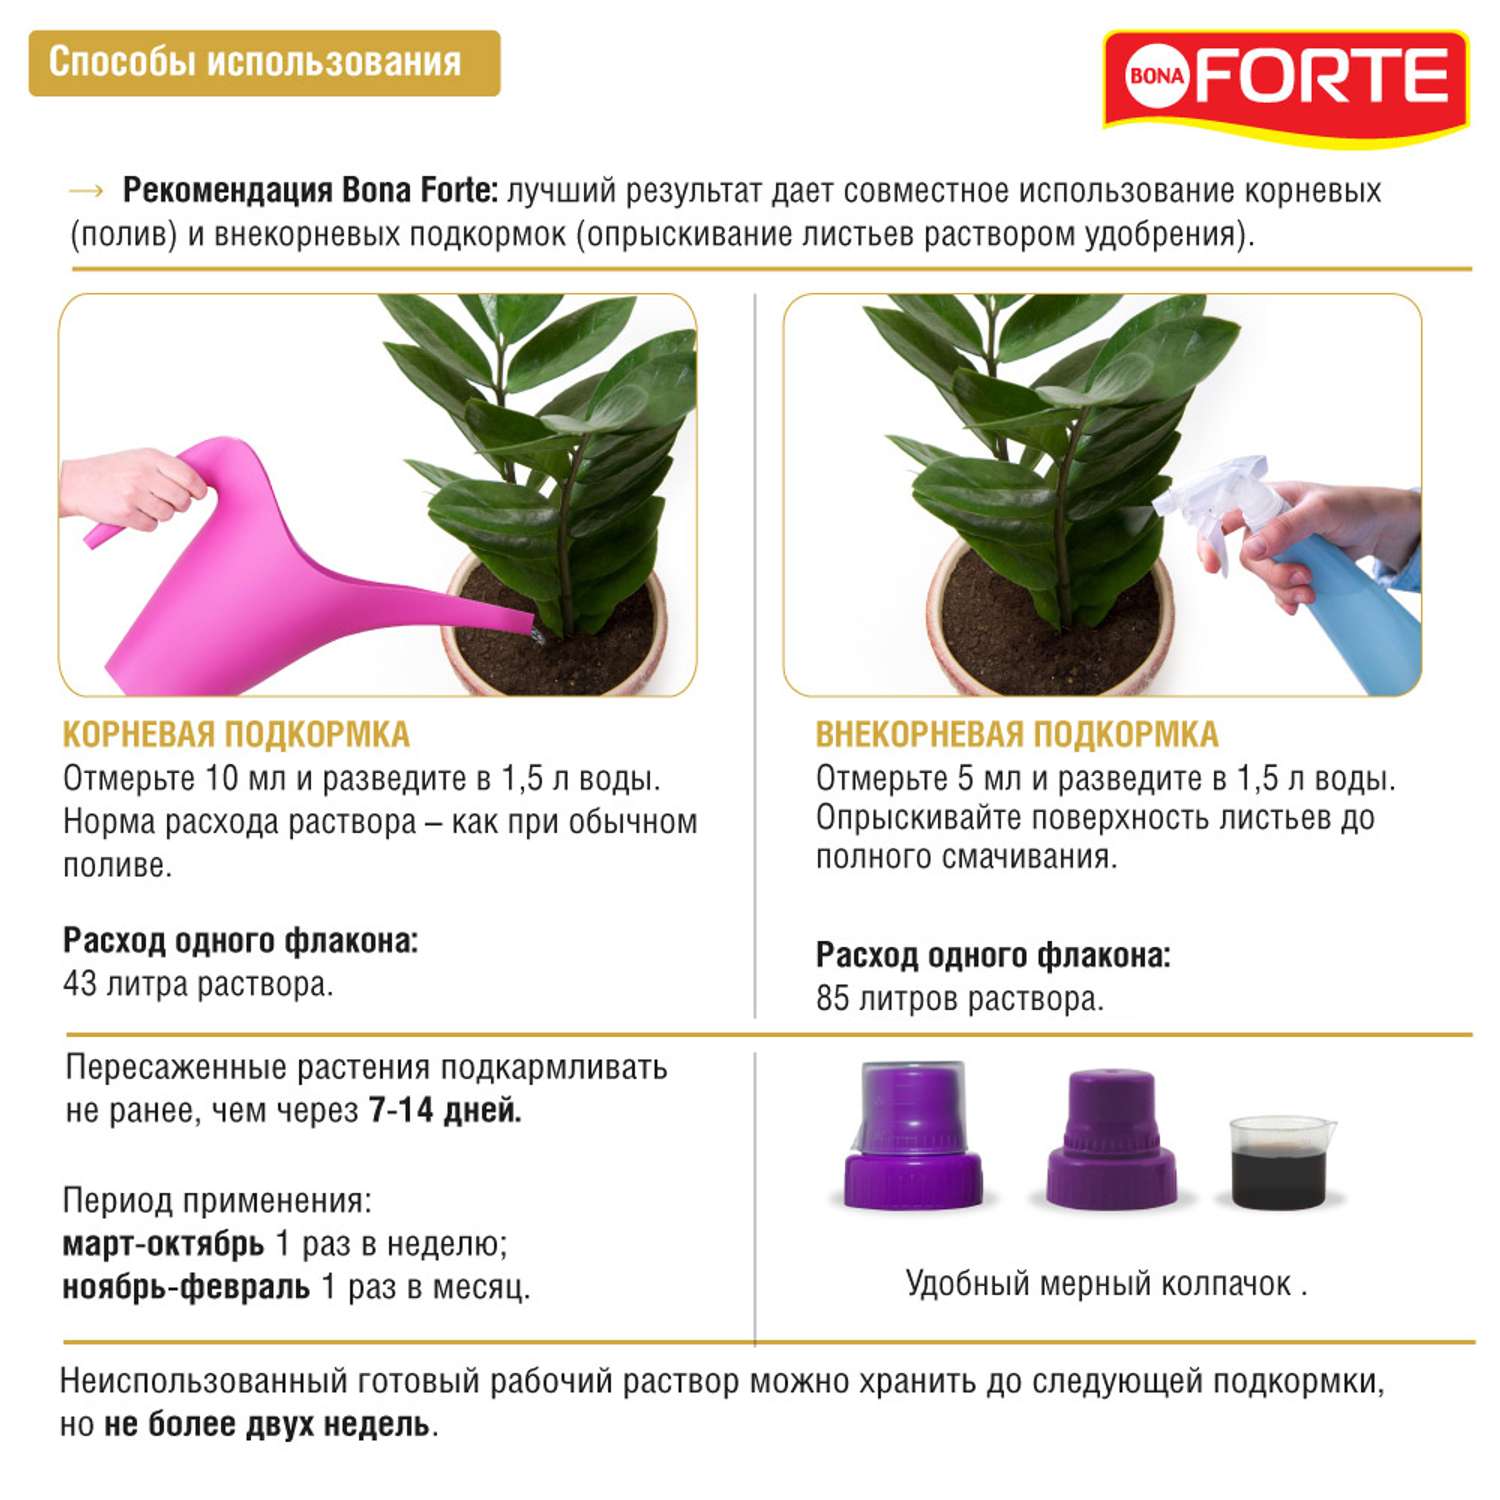 Жидкое удобрение Bona Forte Здоровье Для декоративно-лиственных растений 285 мл - фото 3